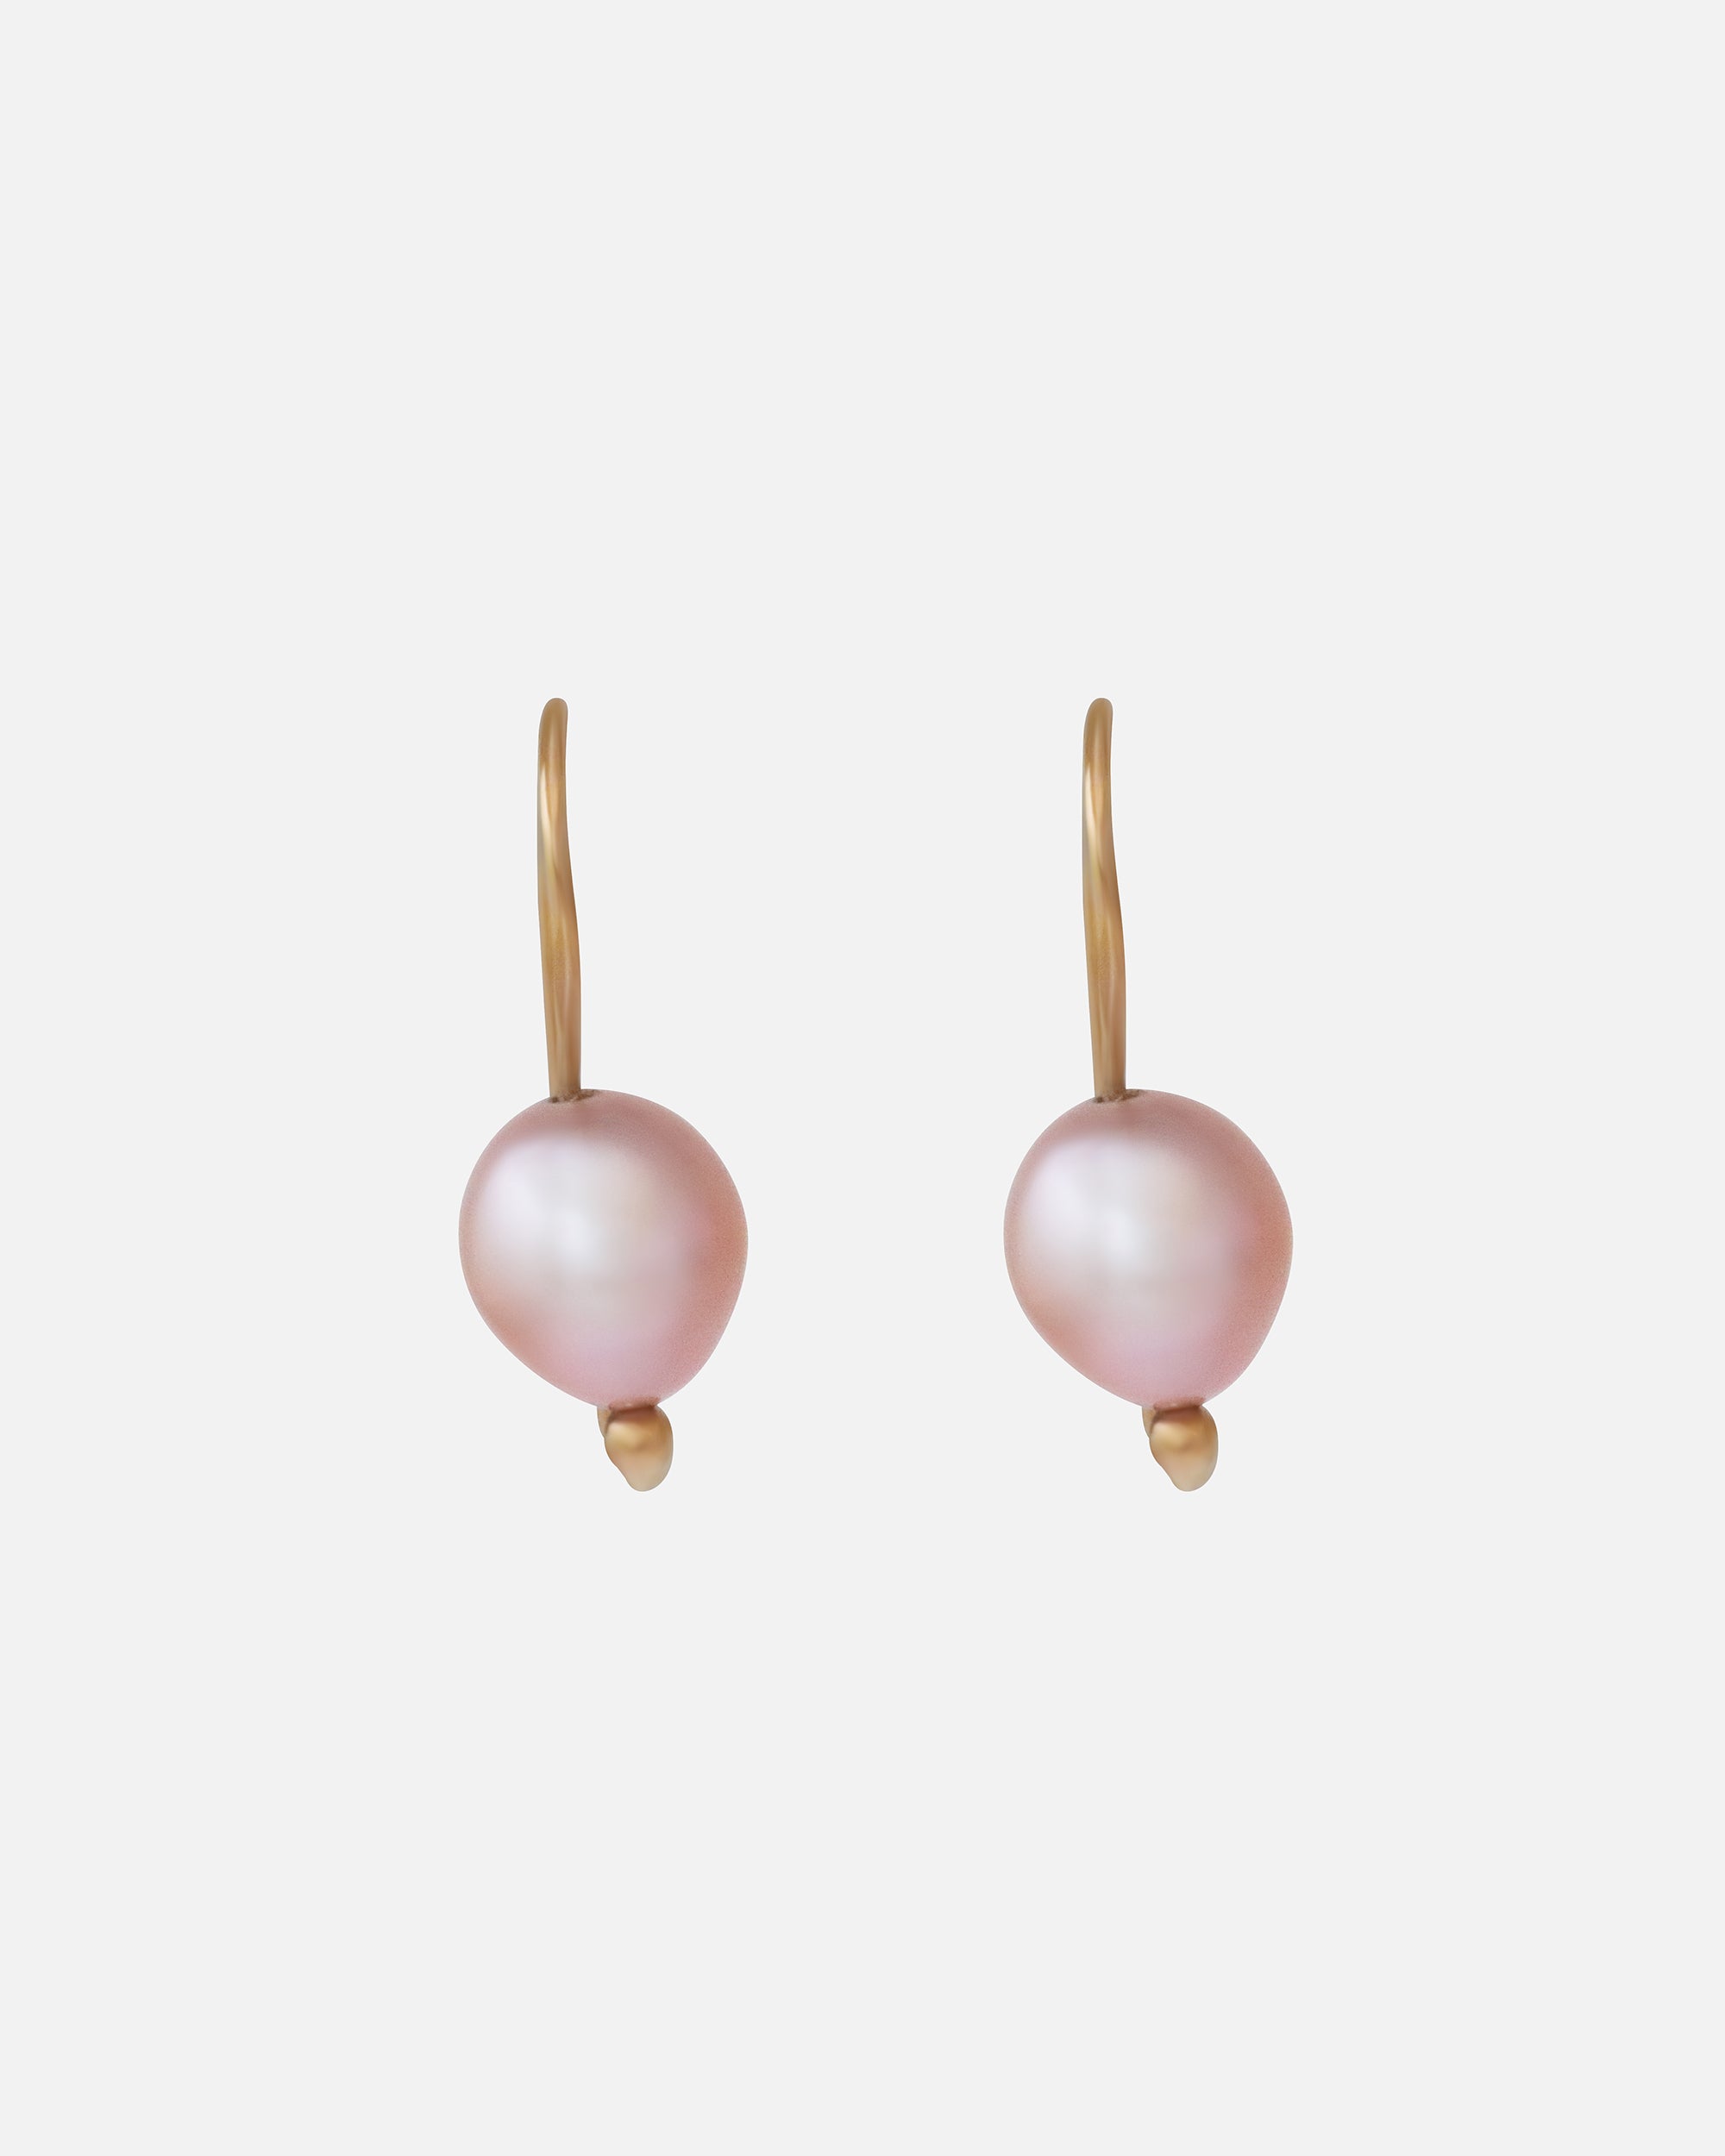 Swan Pearl Earrings By Tricia Kirkland